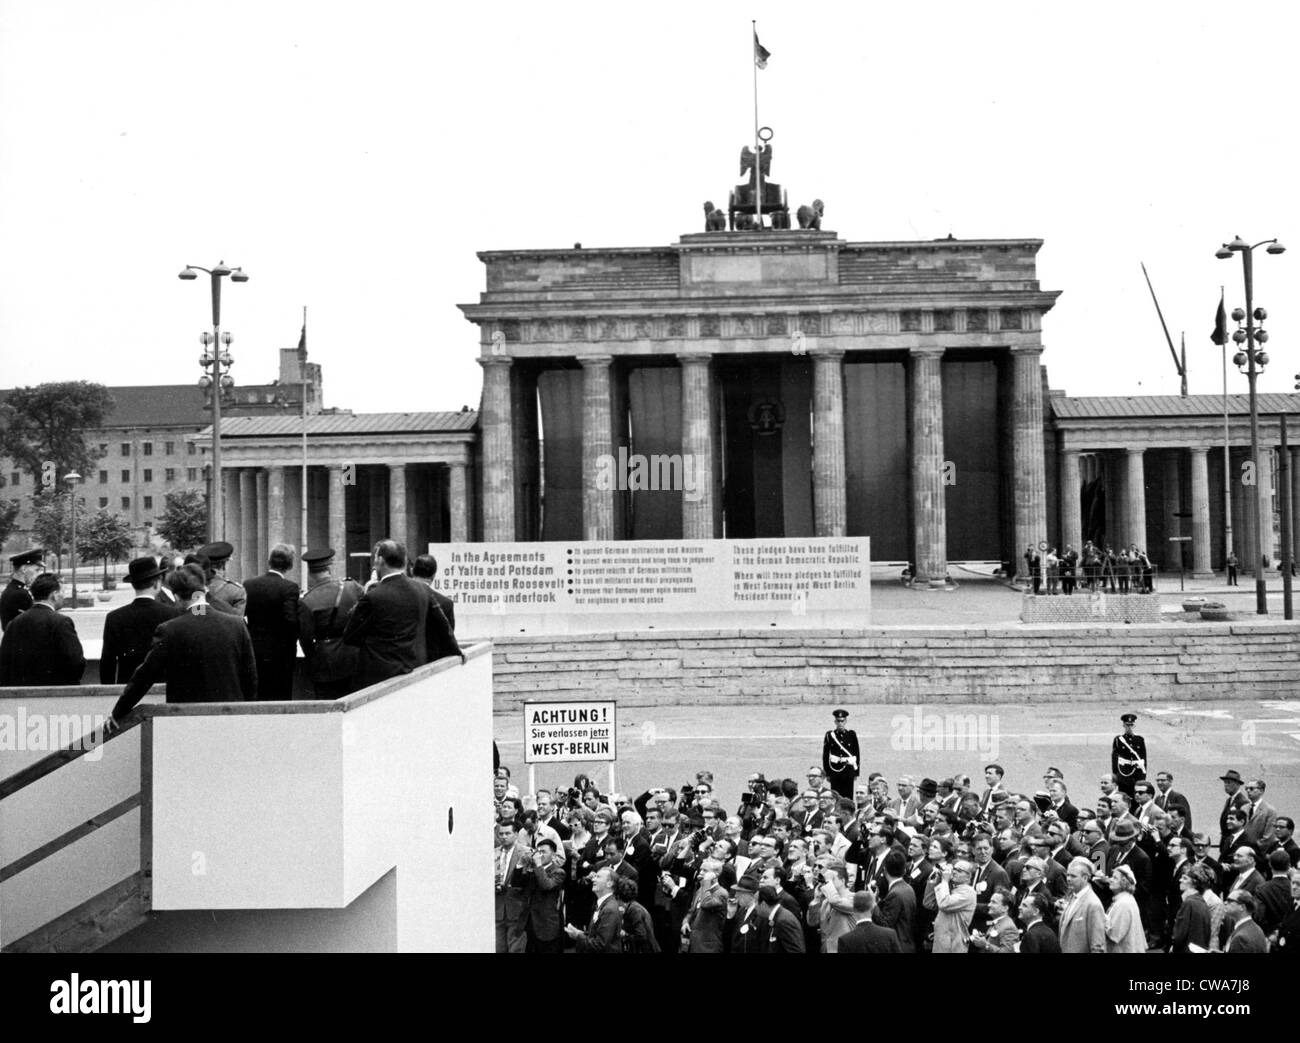 JOHN F. KENNEDY-Viewing der Berliner Mauer von einer Plattform am Brandenburger Tor, Berlin. 27.06.63. Höflichkeit: CSU Archive / Stockfoto